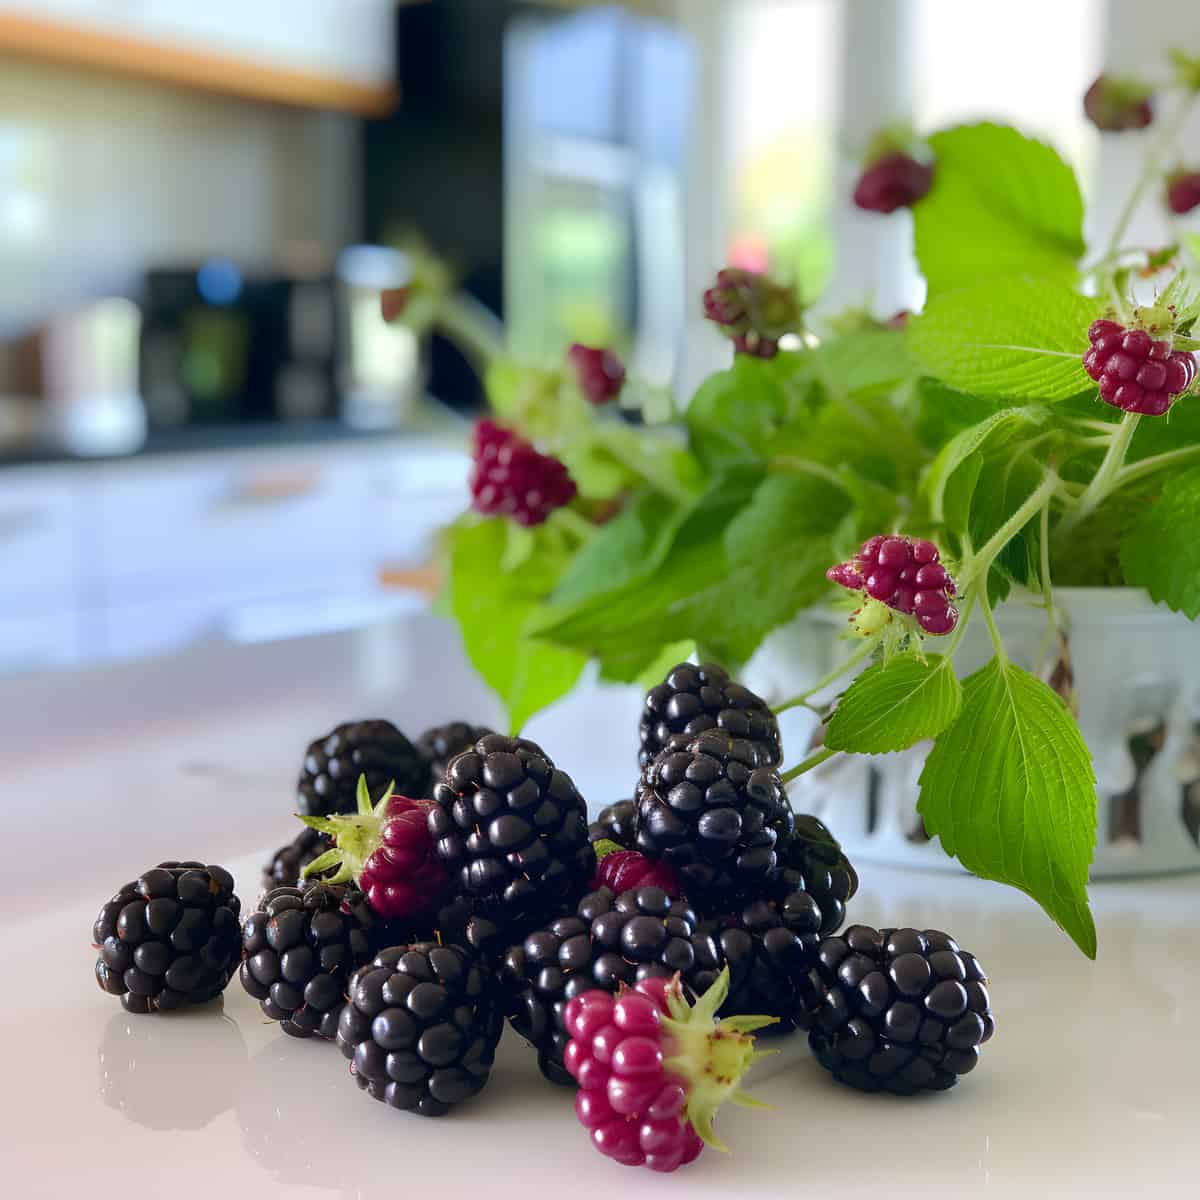 Garden Dewberries on a kitchen counter